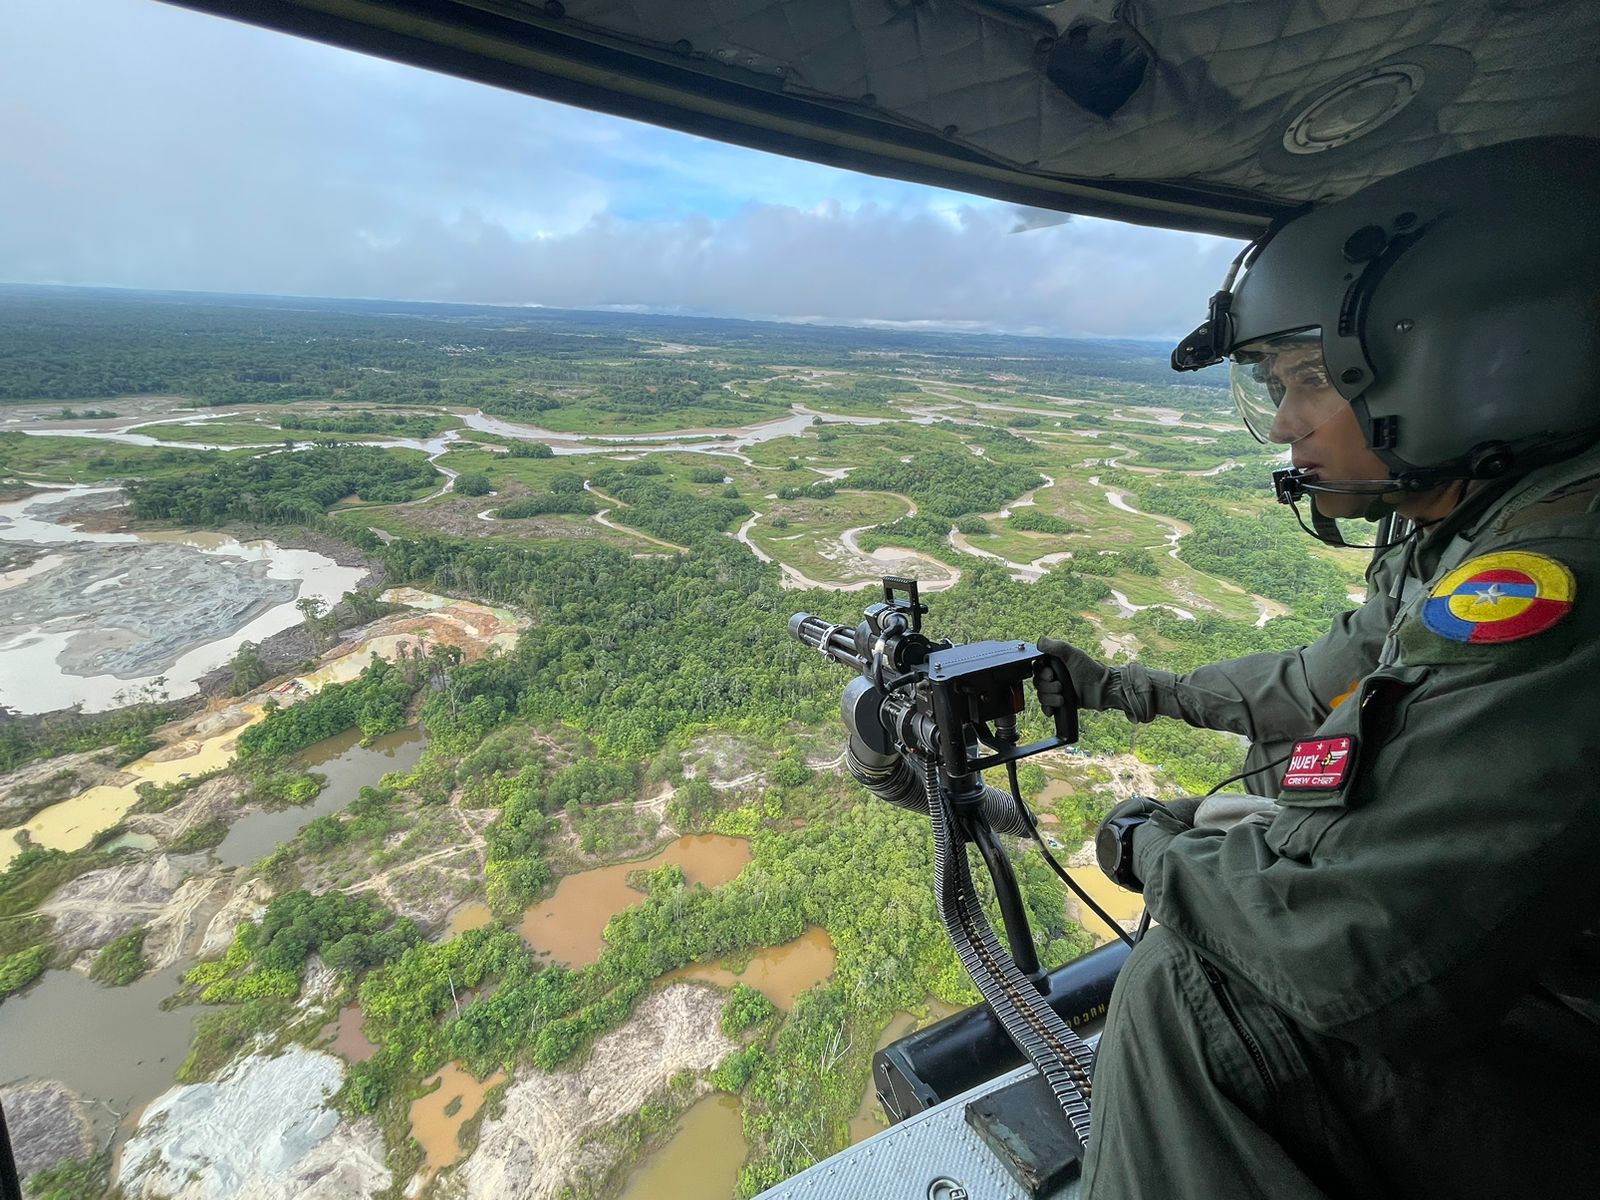 Operación contra minería ilegal en Chocó, debilita finanzas del Clan del Golfo